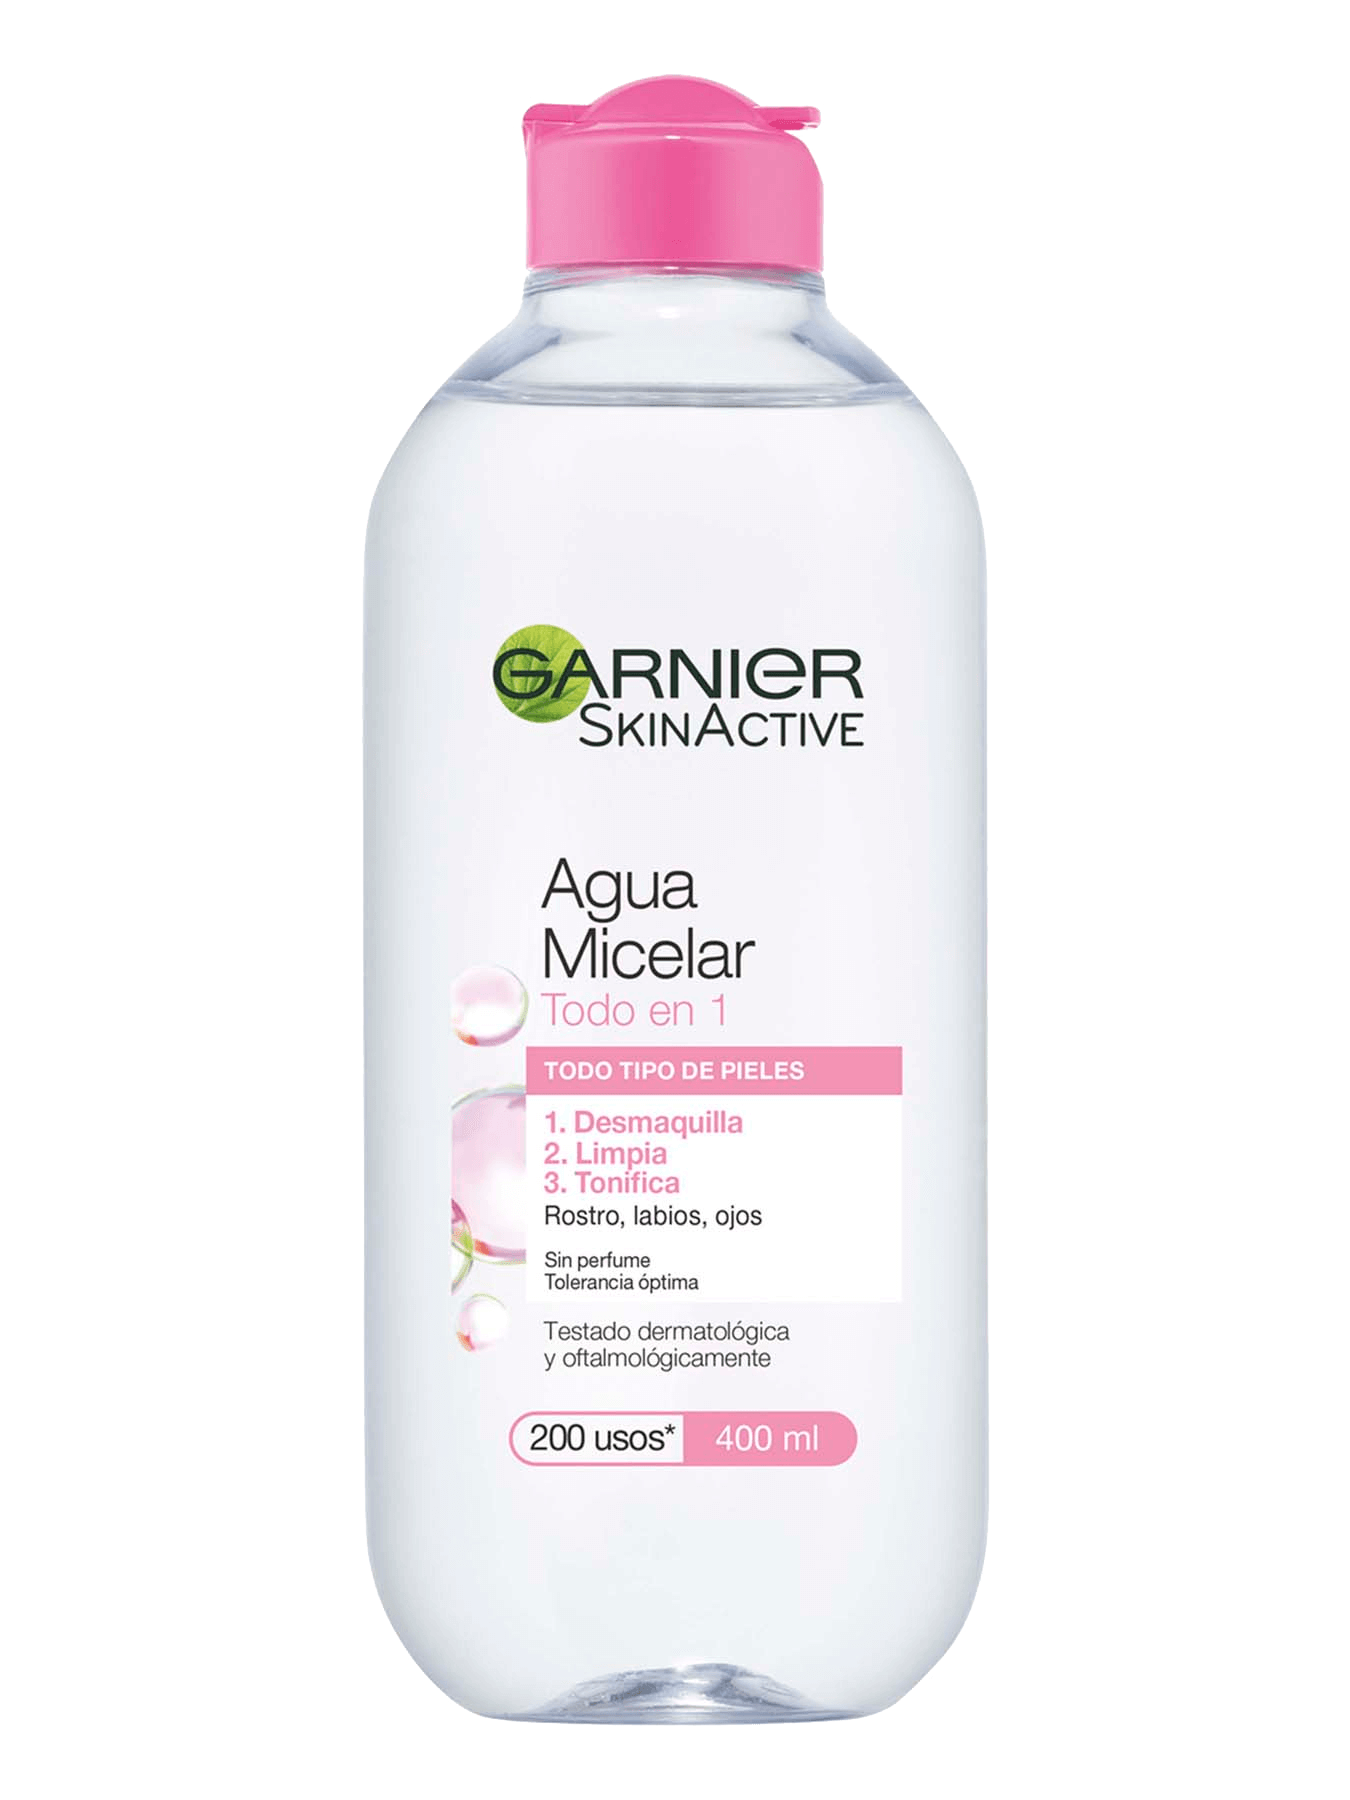 Garnier Agua Micelar Mejorará tu Apariencia, Eliminar las Células Muertas  1.1 L, Cuidado de la piel, Pricesmart, Barranquilla